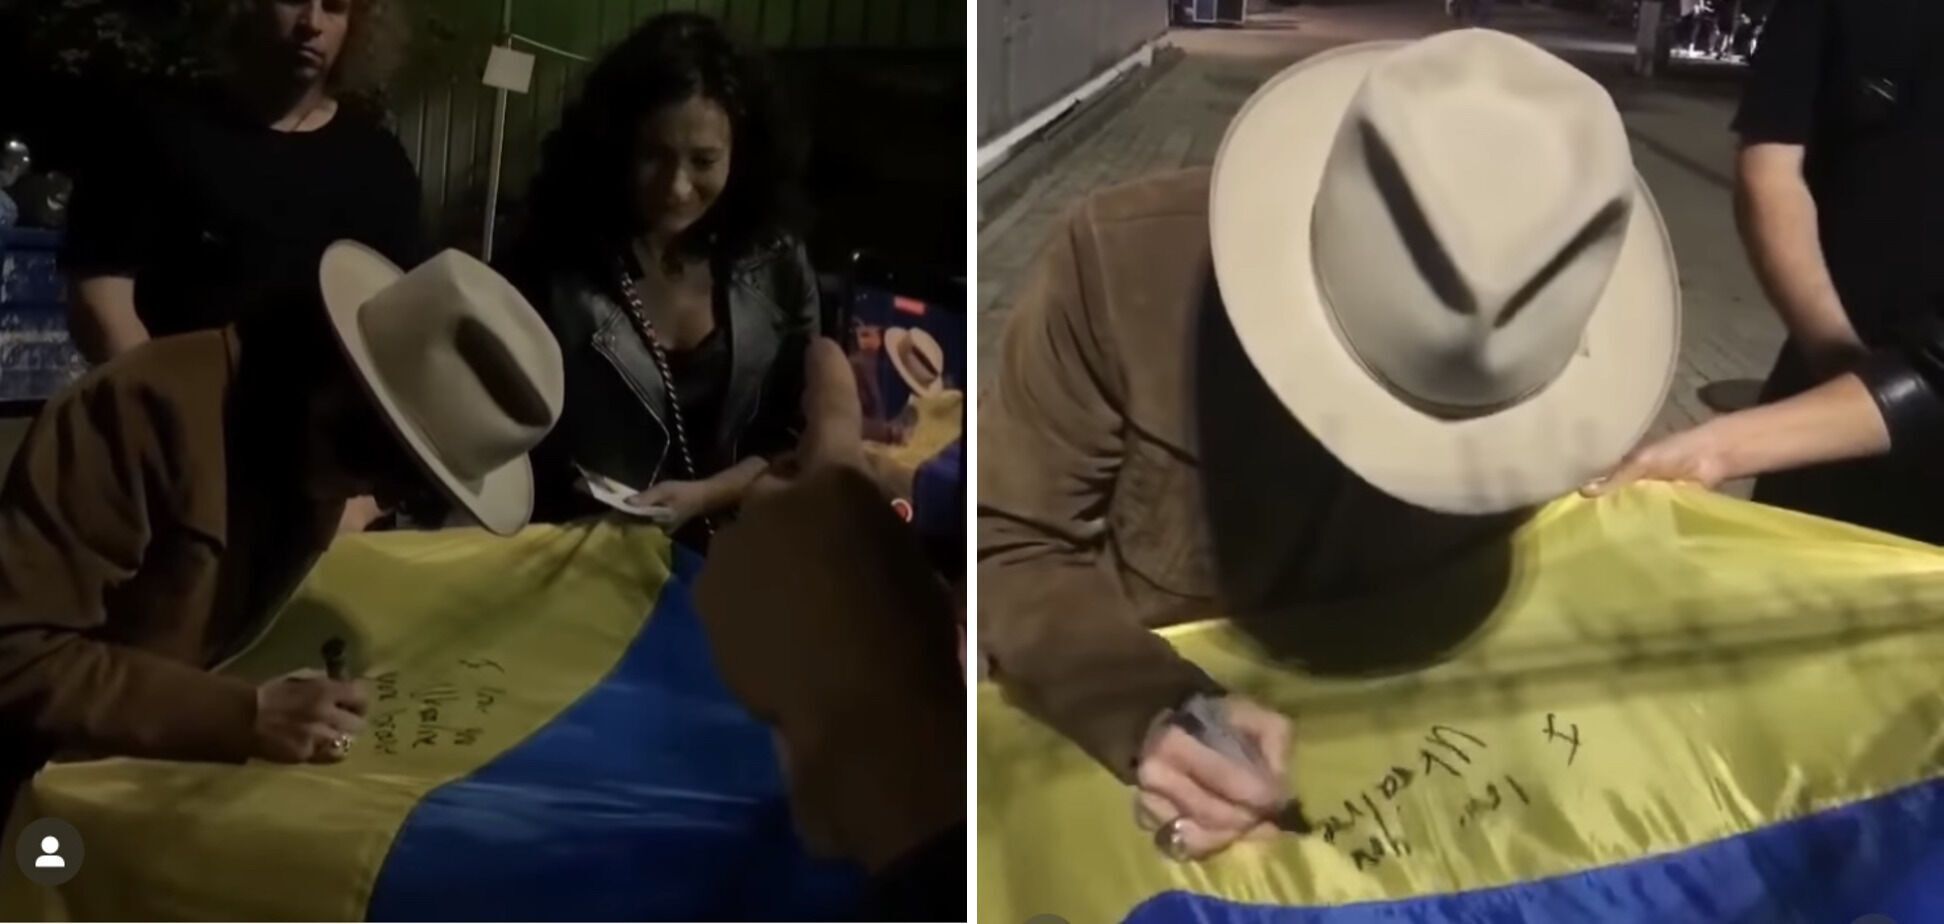 "Я люблю тебя, отважная Украина!" Певица LP на концерте в Варшаве подняла сине-желтый флаг